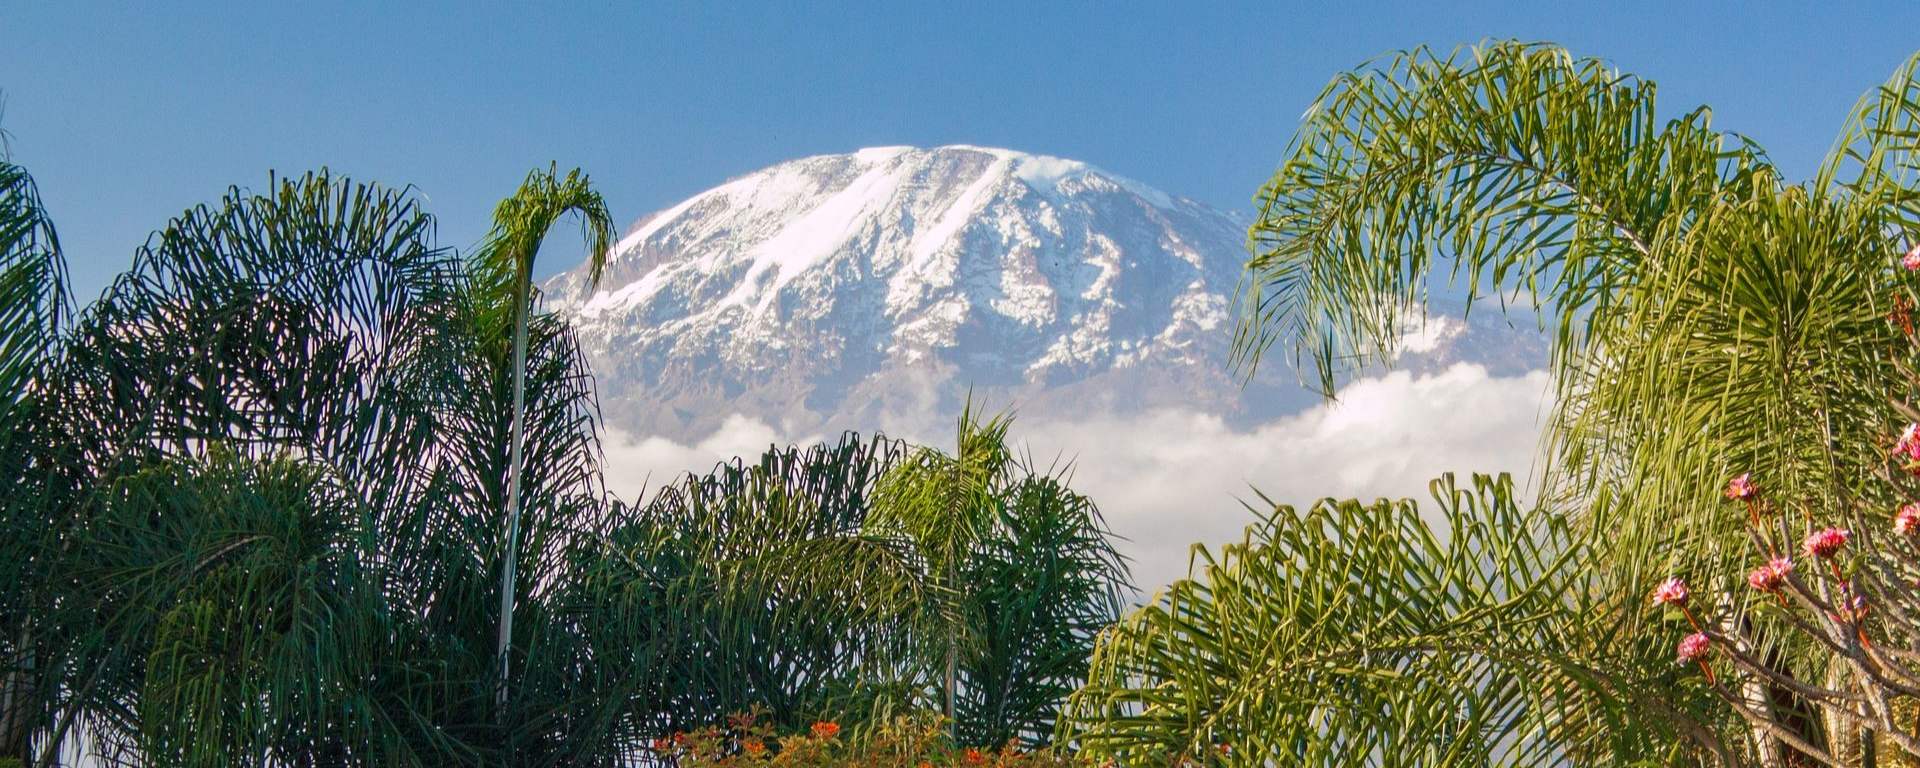 Na stokach Kilimandżaro zainstalowano szybki internet